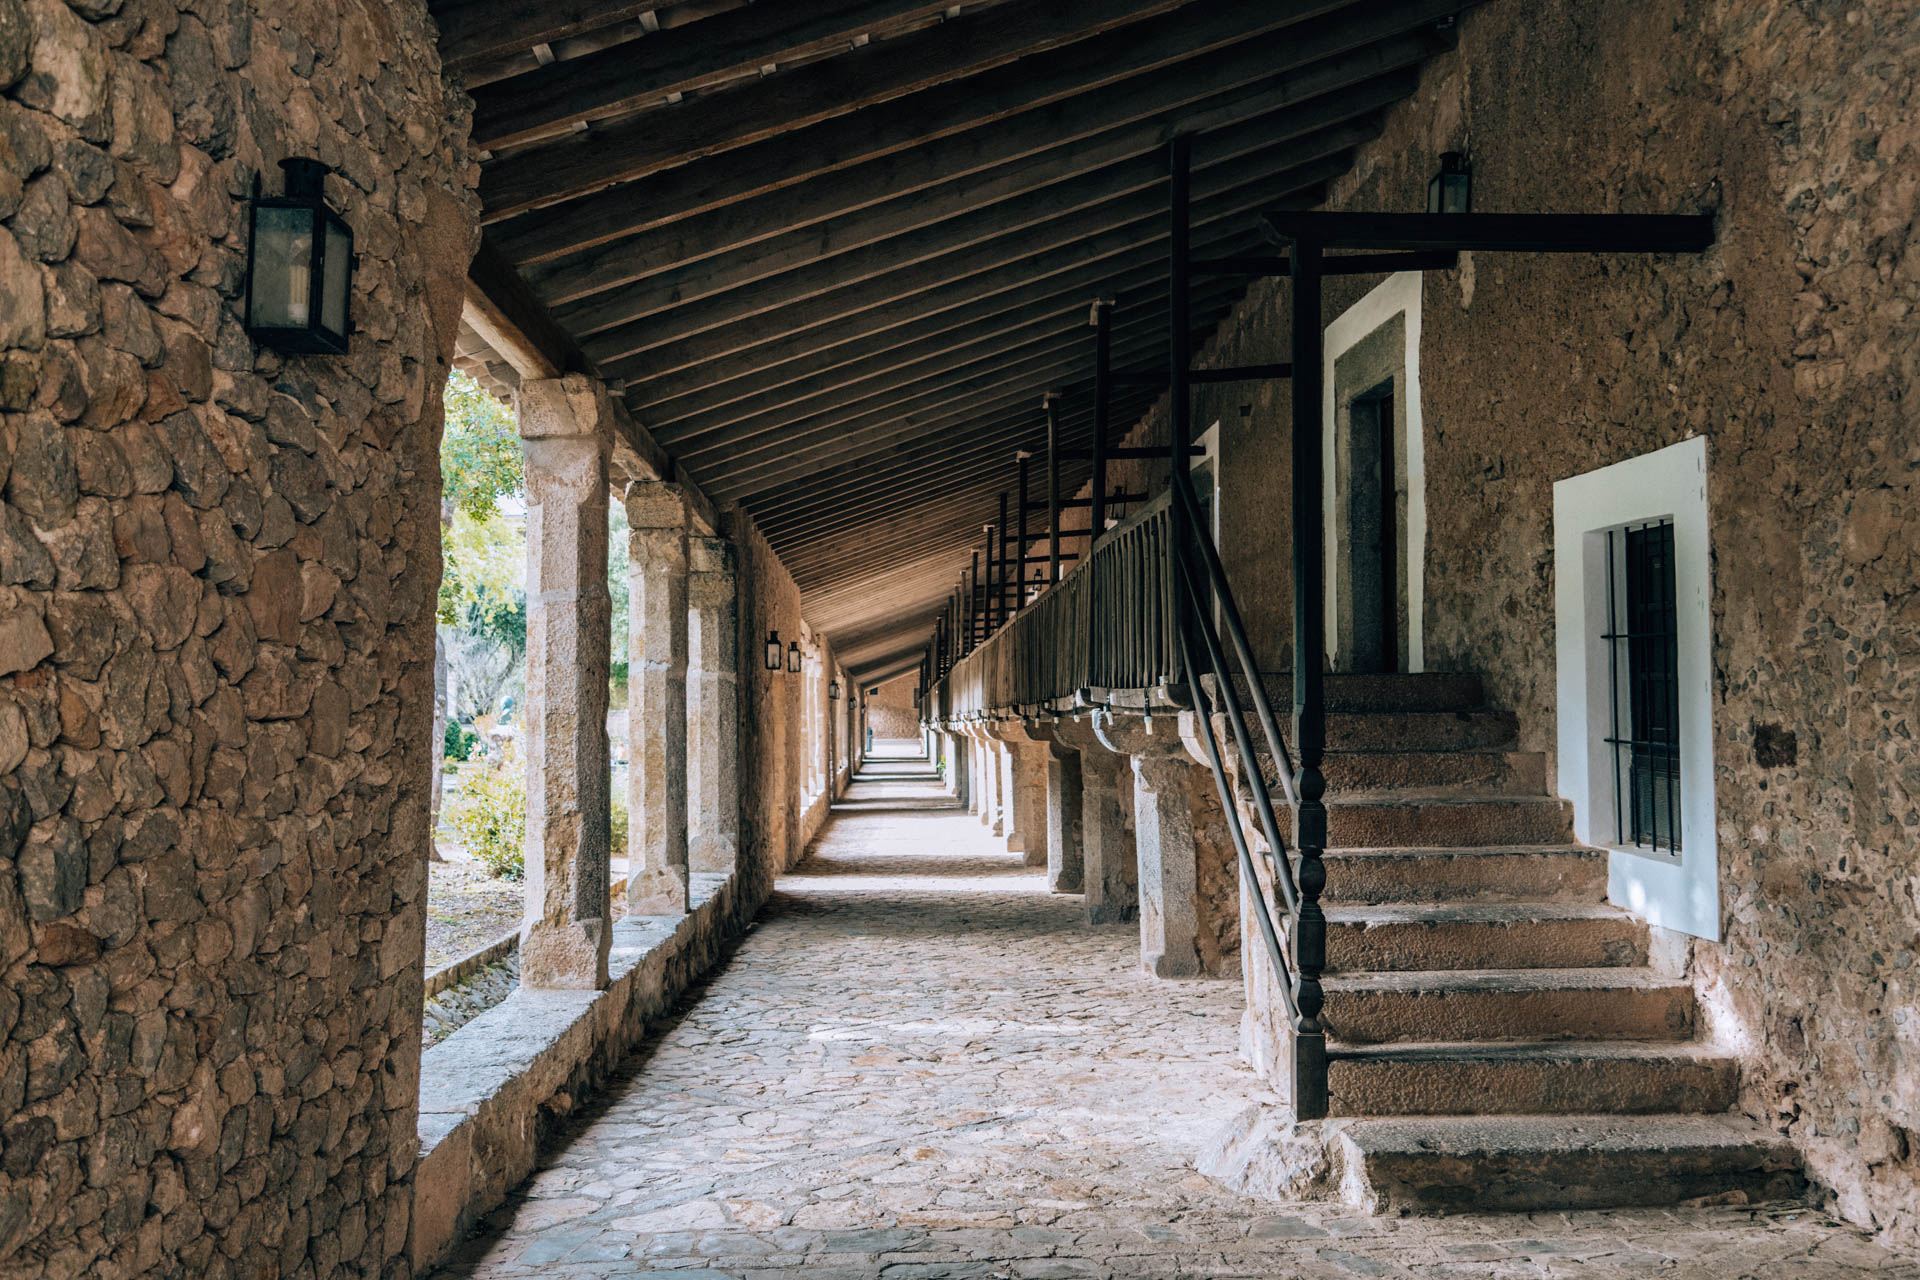 Noclegi w celach klasztornych w Lluc | Atrakcje na Majorce